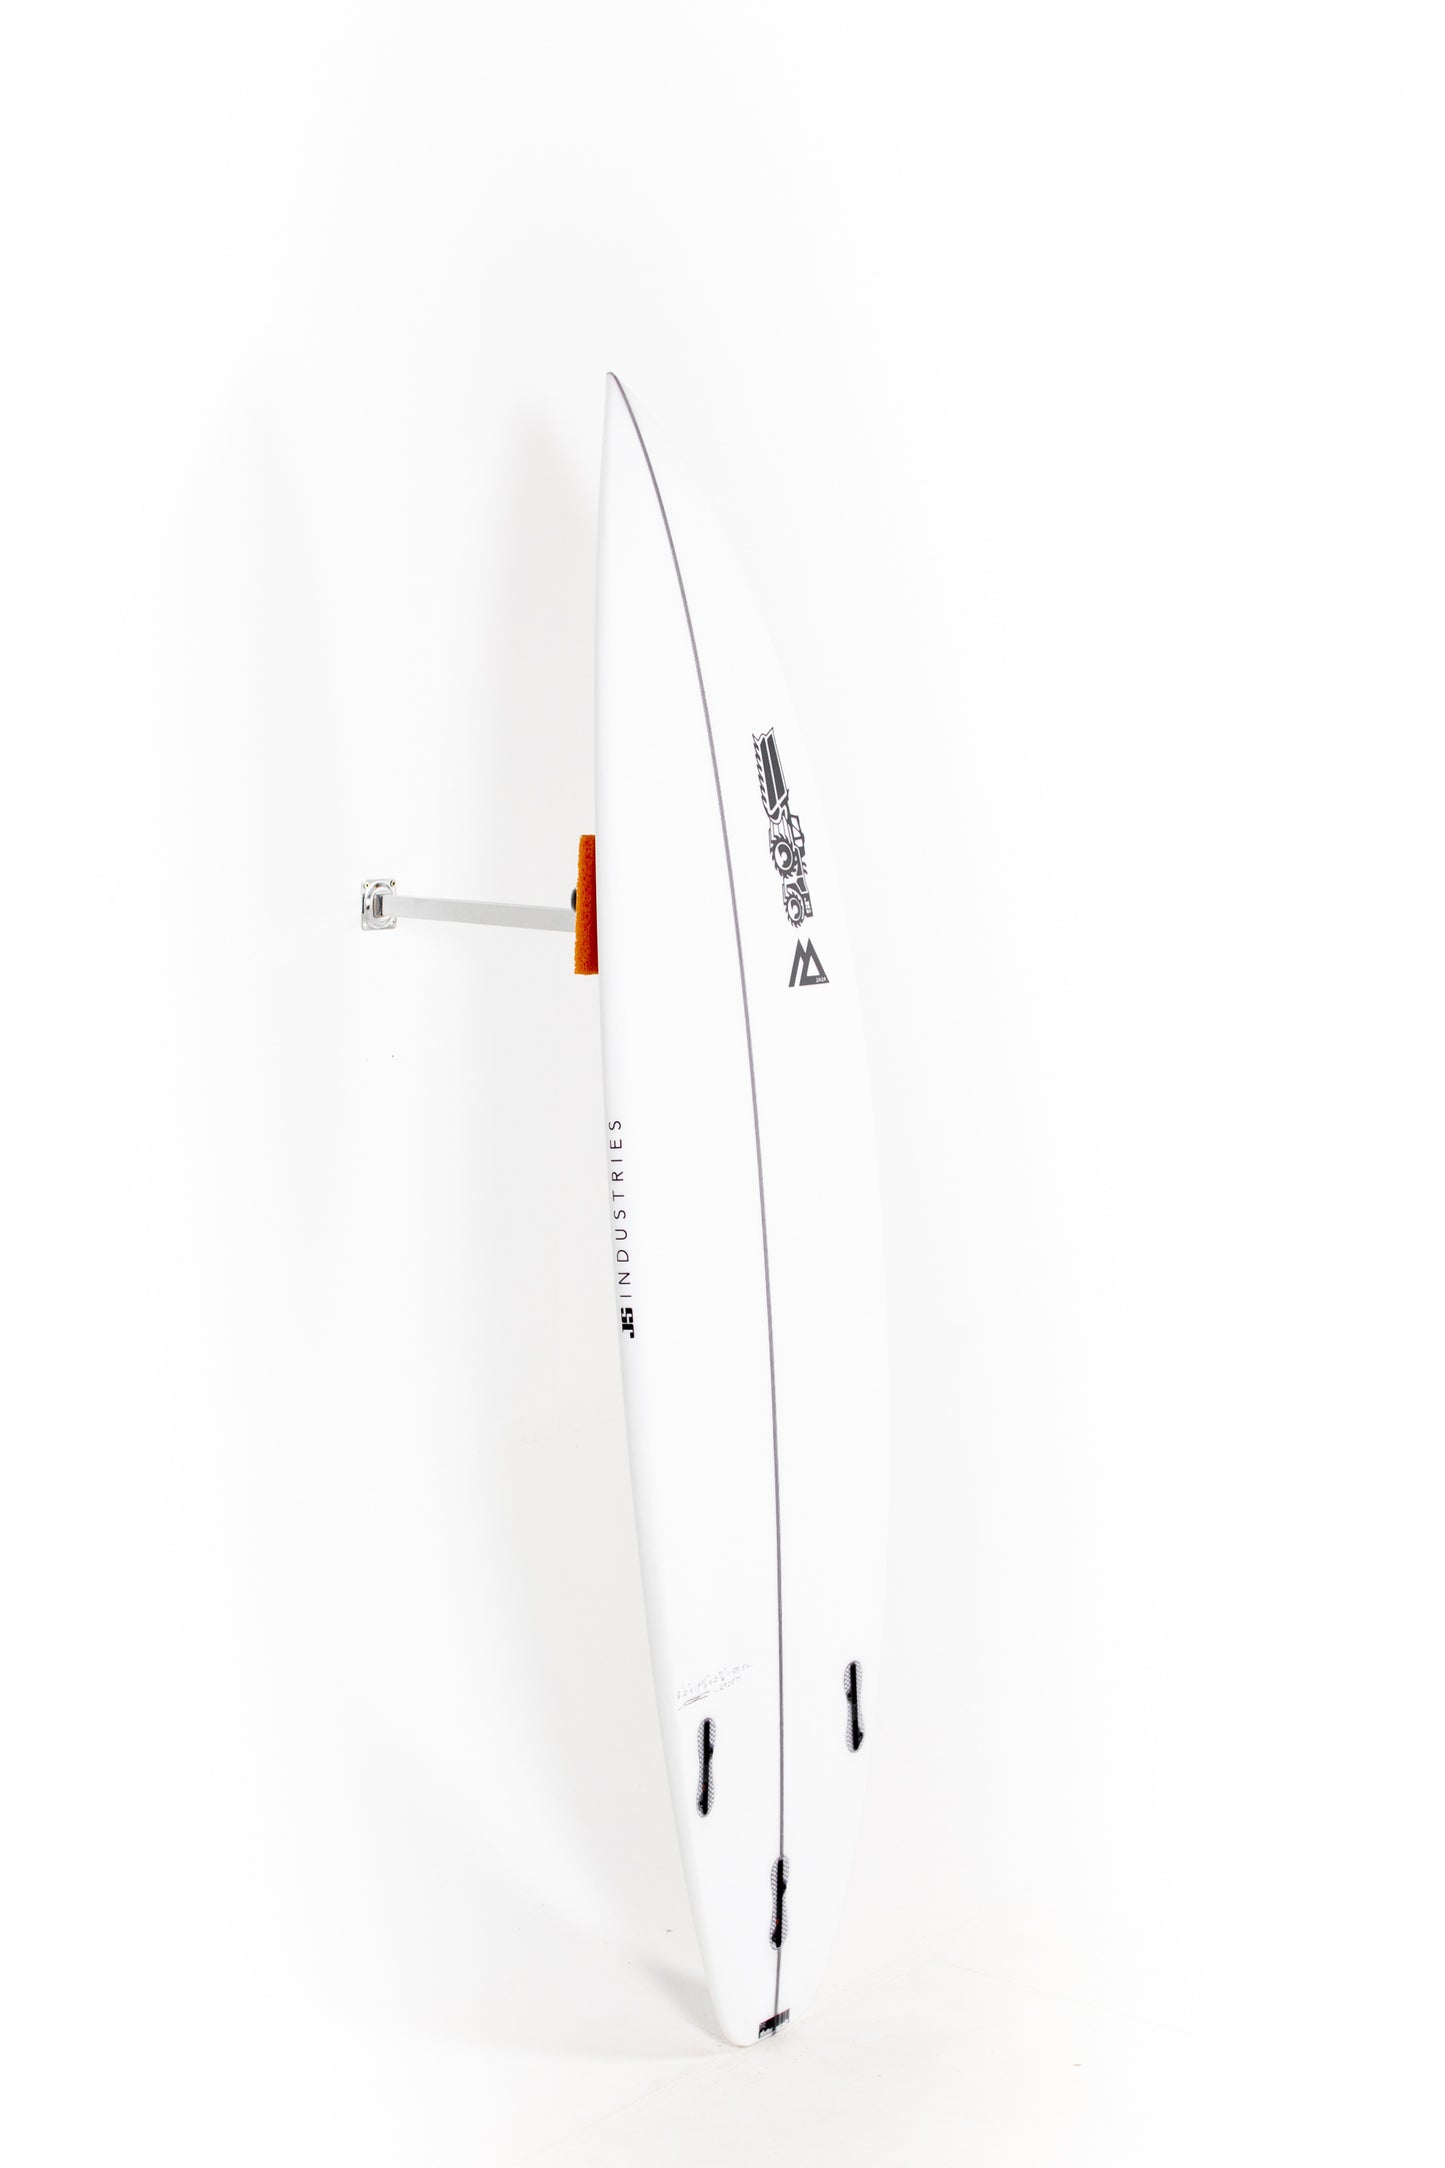 
                  
                    Pukas Surf Shop - JS Surfboards - MONSTA 2020 - 6'2" x 19 1/8 x 2 7/16 x 30.5L. - MONSTA202062
                  
                